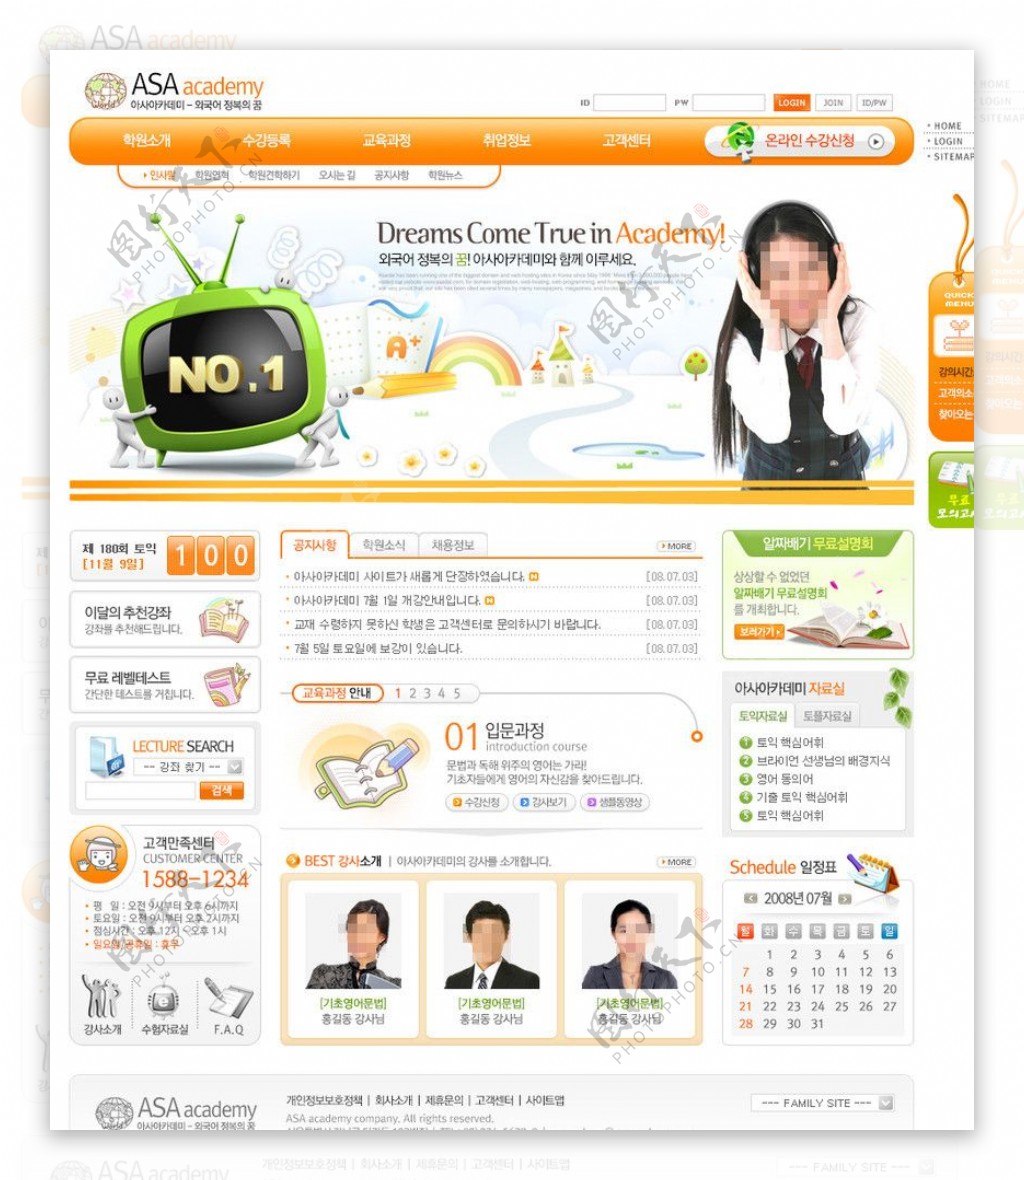 商务网页设计模板图片